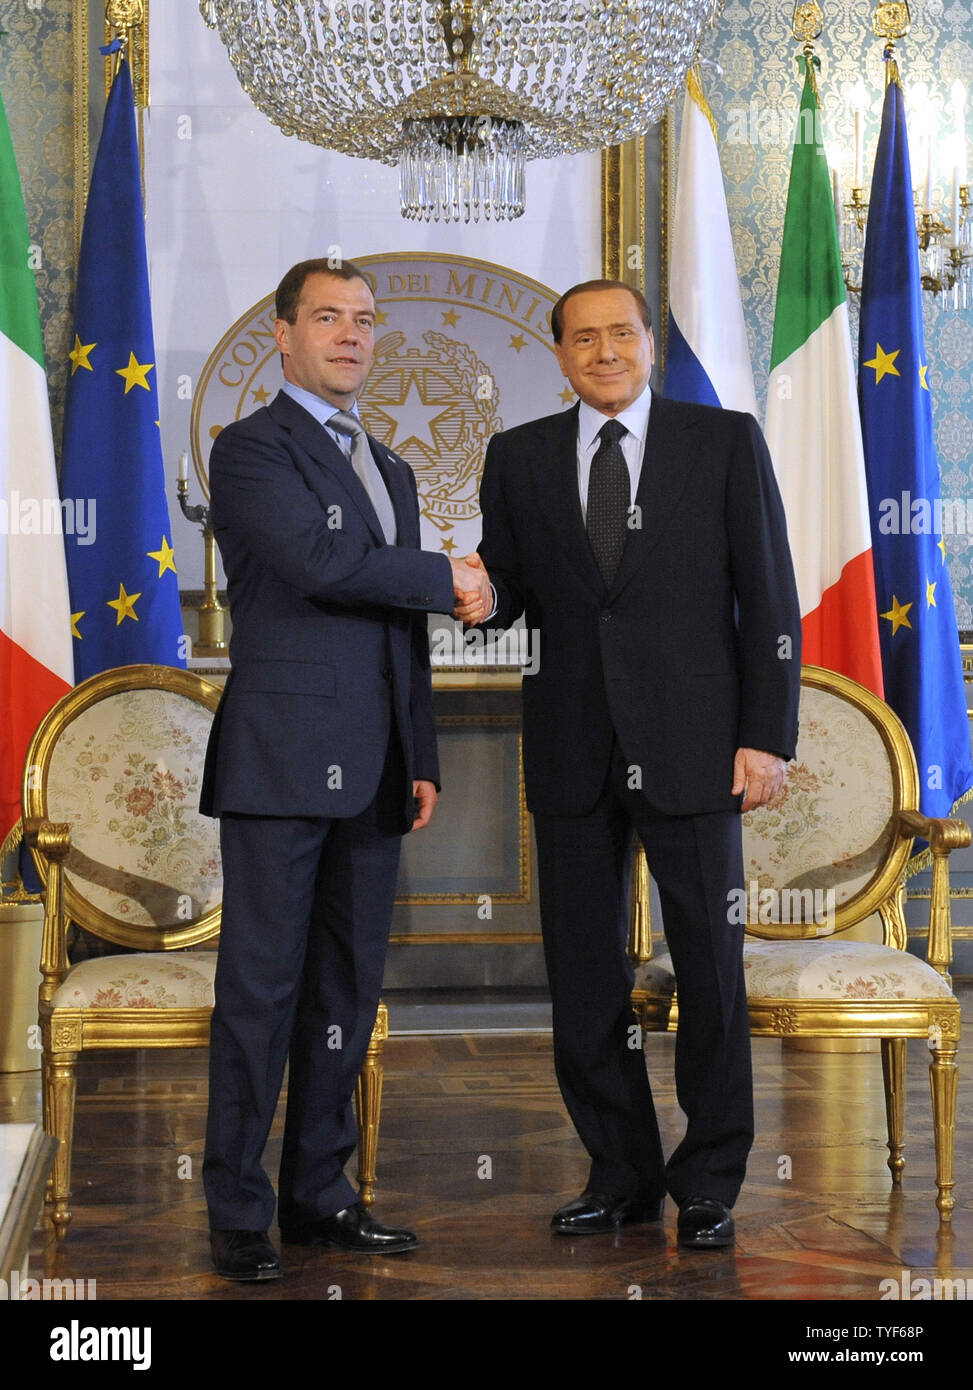 Der italienische Ministerpräsident Silvio Berlusconi (R) schüttelt Hände mit dem russischen Präsidenten Dmitri Medwedew vor ihrer Sitzung an der Präfektur Palace in Mailand am 23. Juli 2010. UPI Foto/Alex Volgin.. Stockfoto